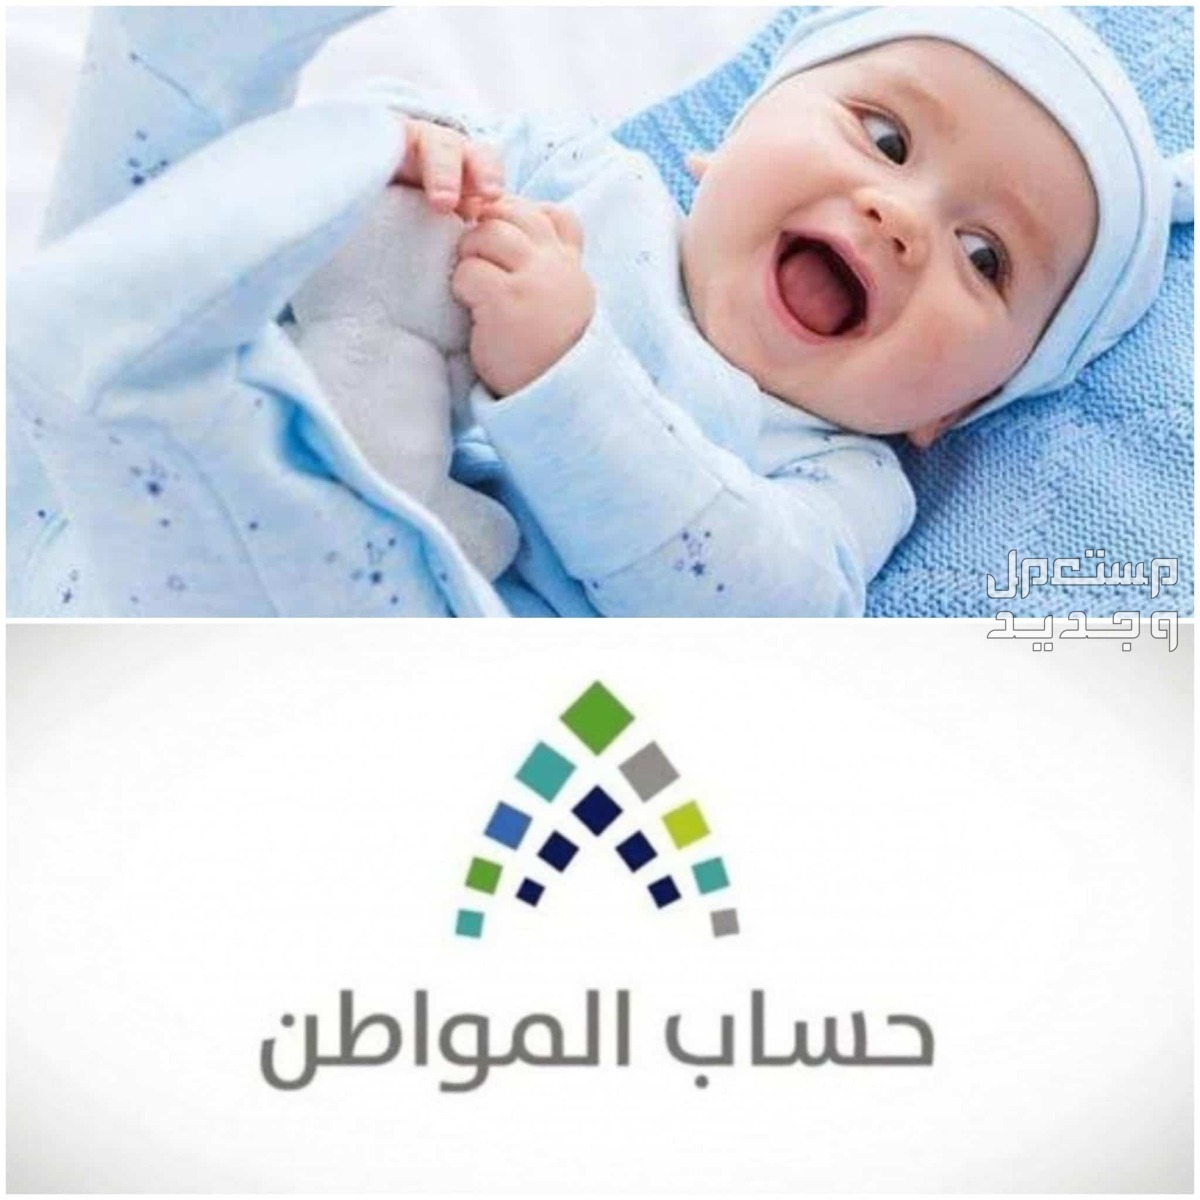 طريقة تسجيل المولود الجديد في حساب المواطن 1445 في ليبيا تسجيل المولود الجديد في حساب المواطن